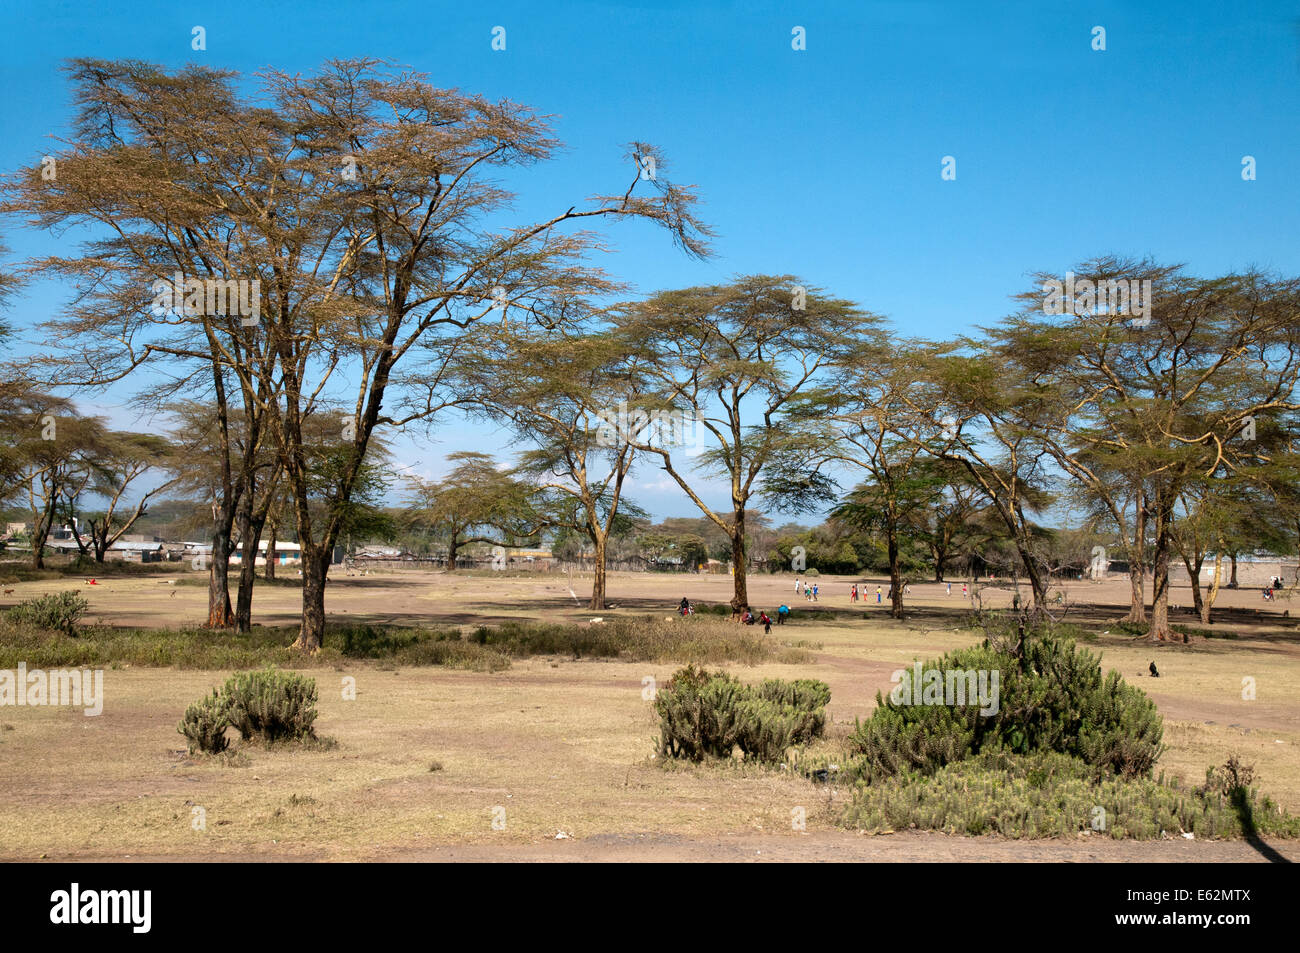 Campi di gioco sotto giallo abbaiato alberi di acacia febbre alberi giovani uomini che giocano a calcio calcio vicino a Naivasha Kenya Africa Orientale Y Foto Stock